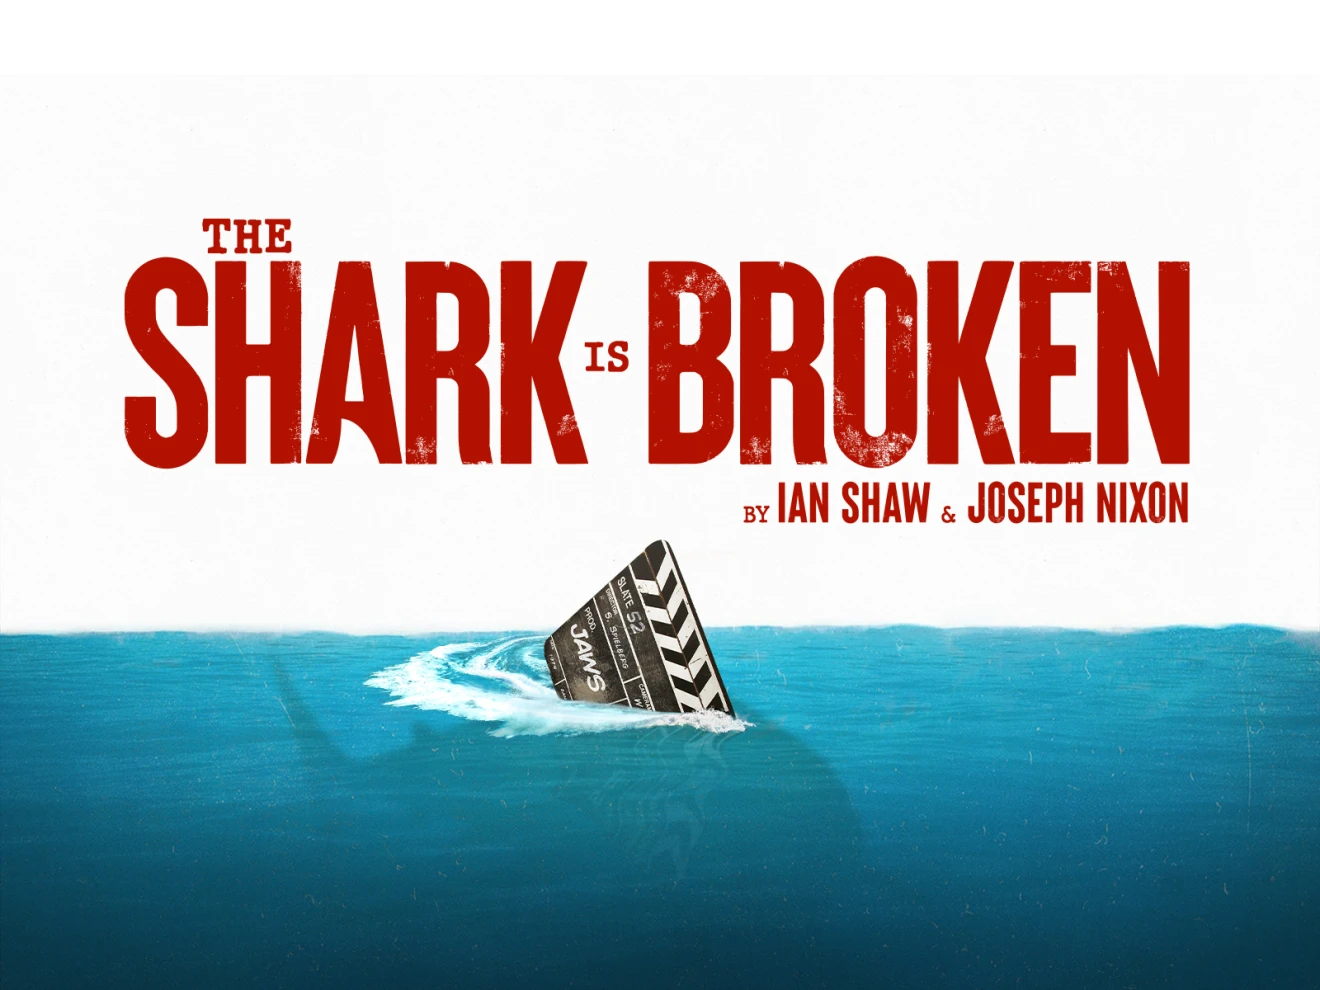 The Shark Is Broken on Broadway